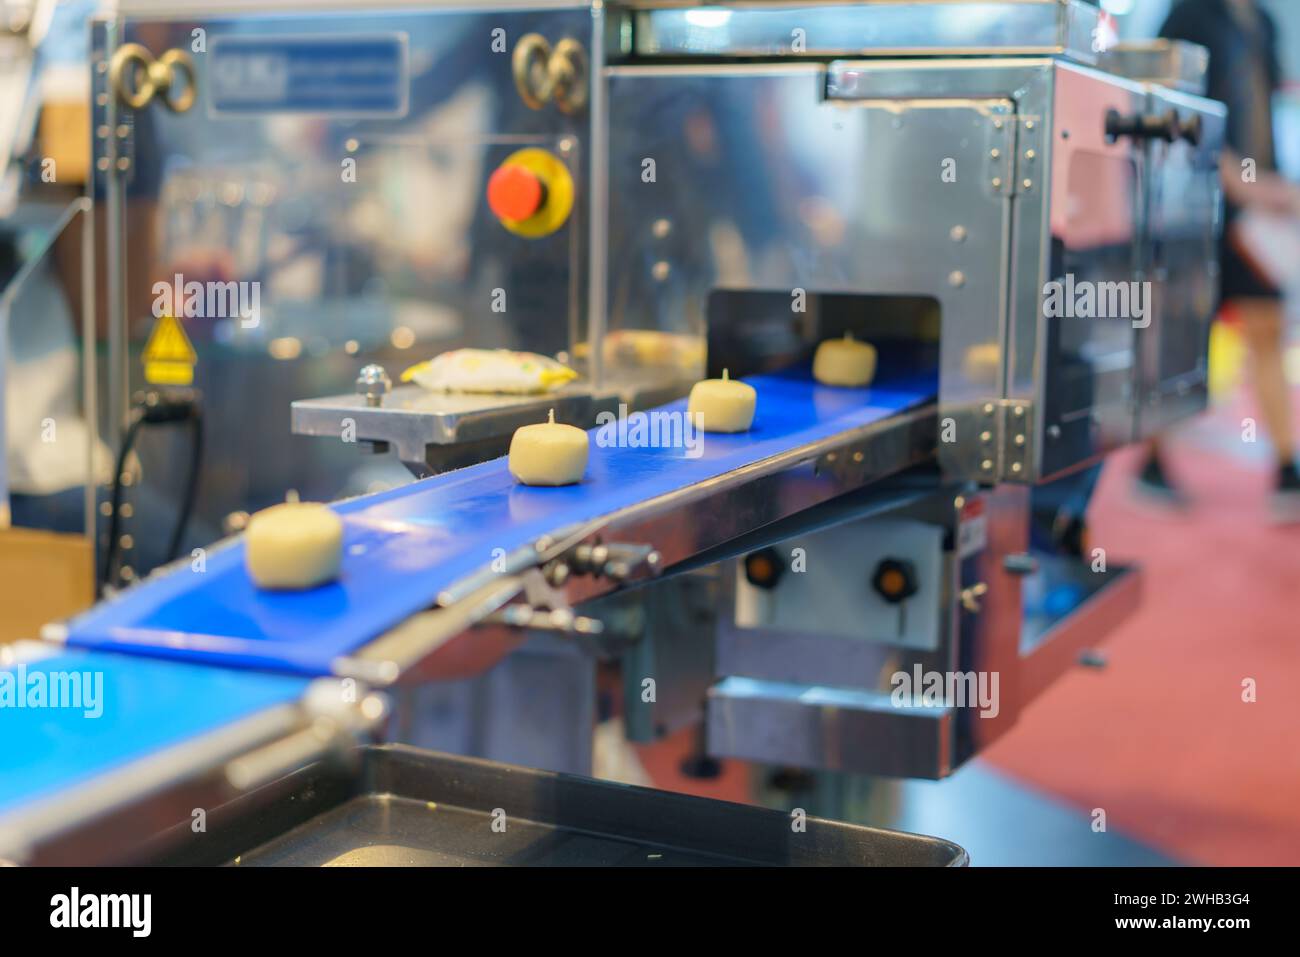 Immagine ravvicinata di un sistema automatizzato di trasformazione alimentare industriale che mostra porzioni di impasto su un nastro trasportatore blu, con elementi di macchinari sul retro Foto Stock